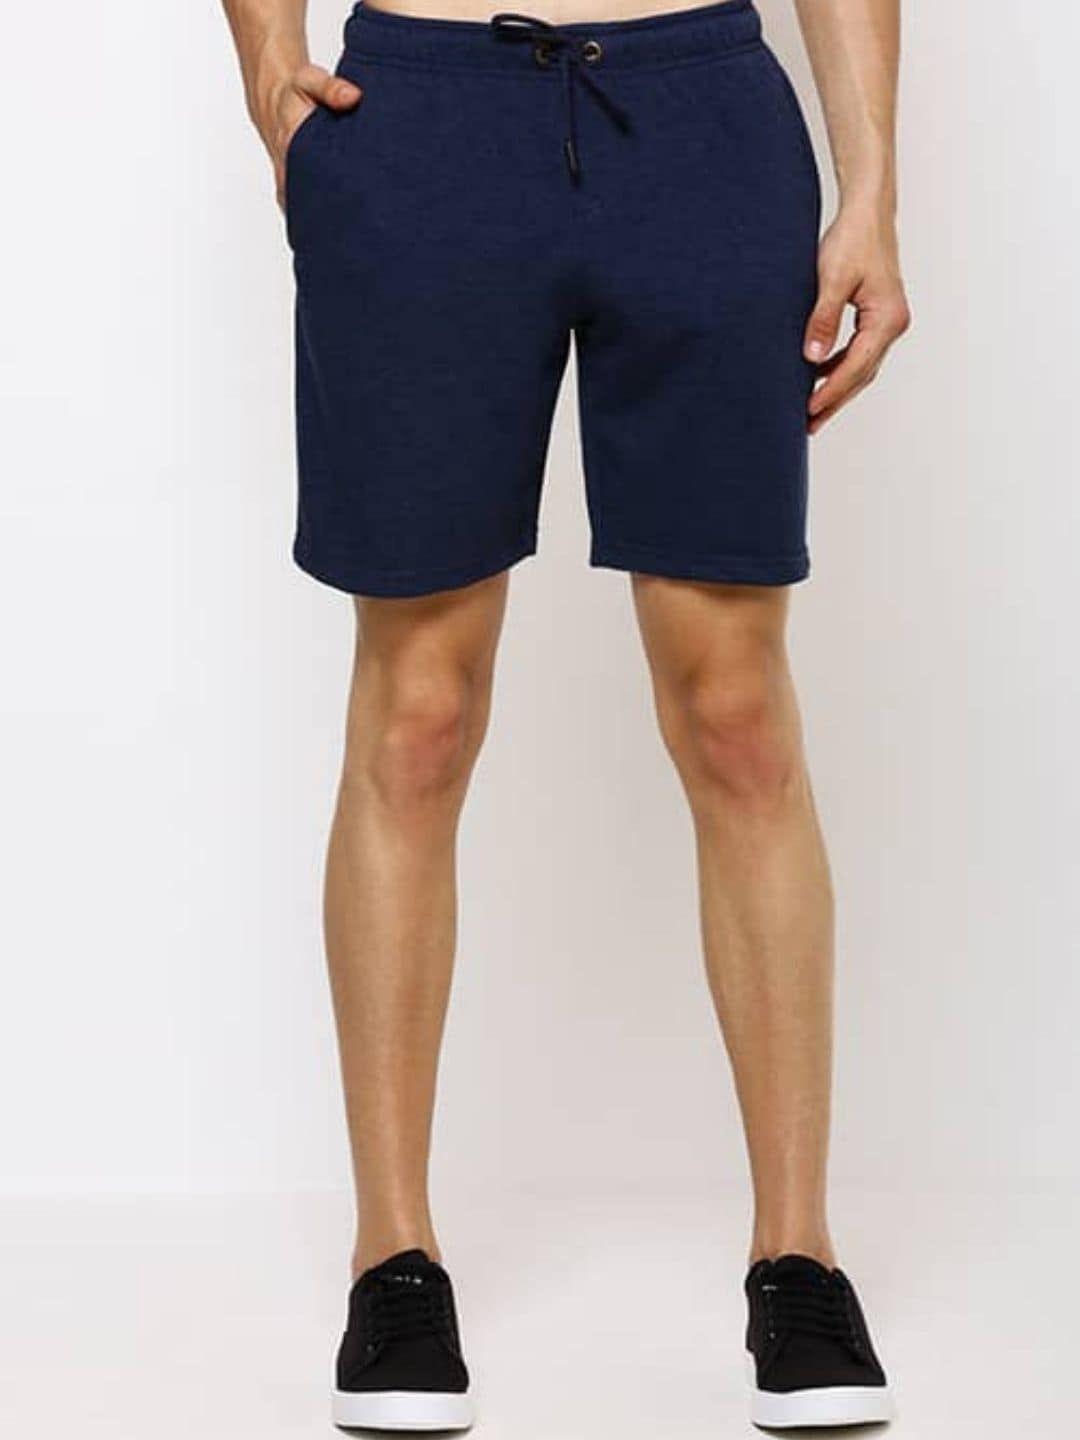 bareblow men mid-rise cotton shorts